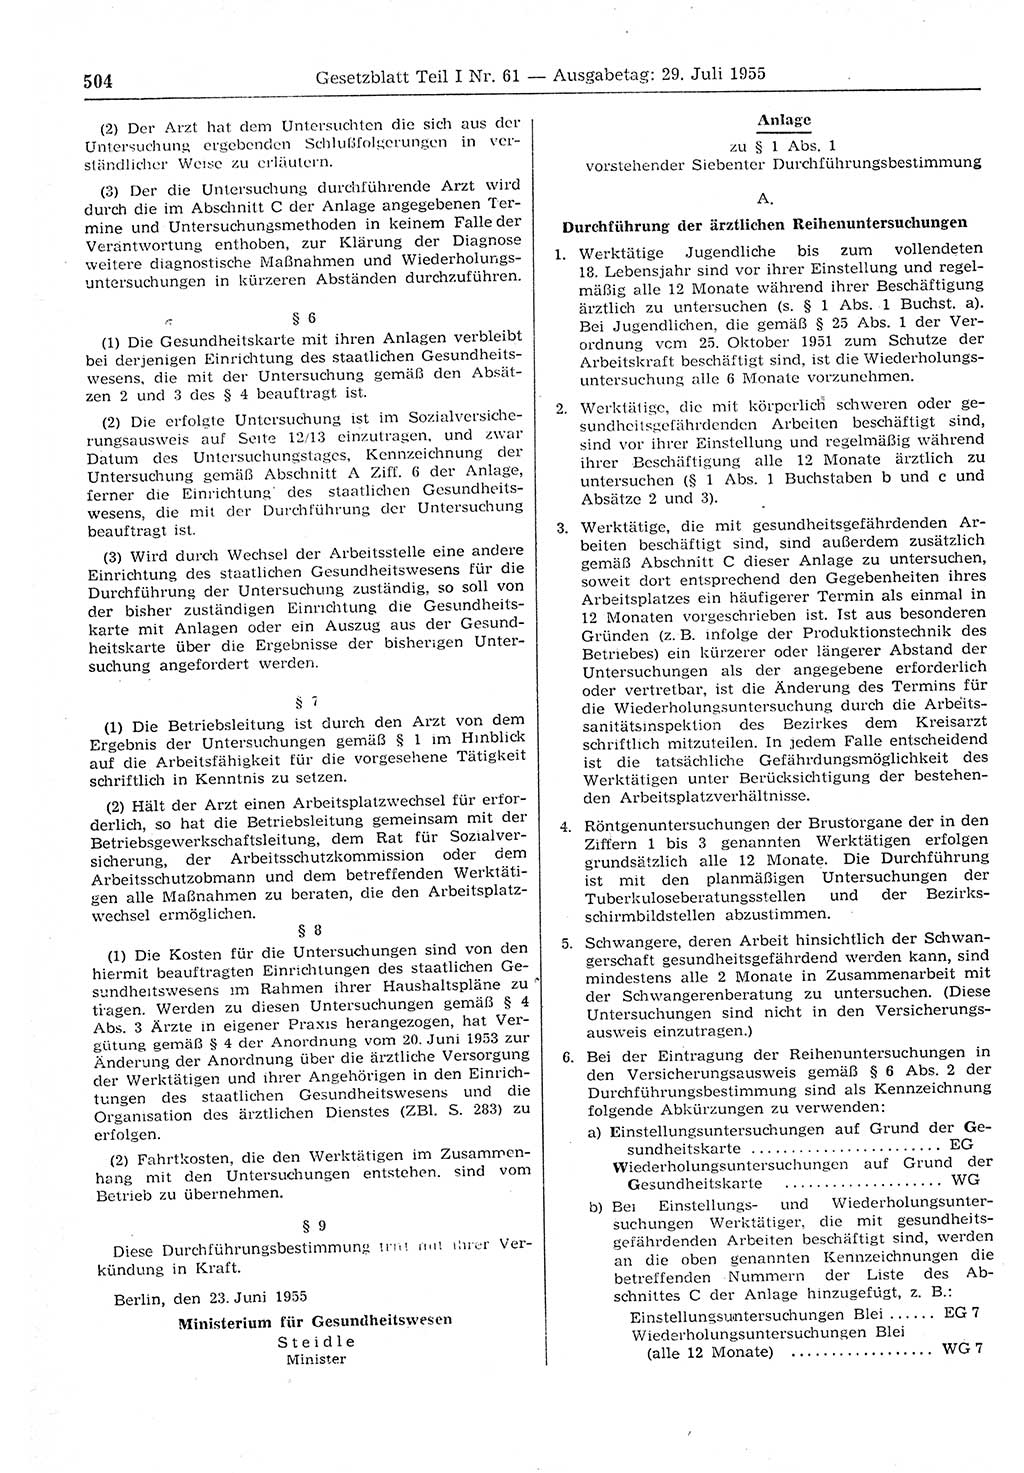 Gesetzblatt (GBl.) der Deutschen Demokratischen Republik (DDR) Teil Ⅰ 1955, Seite 504 (GBl. DDR Ⅰ 1955, S. 504)